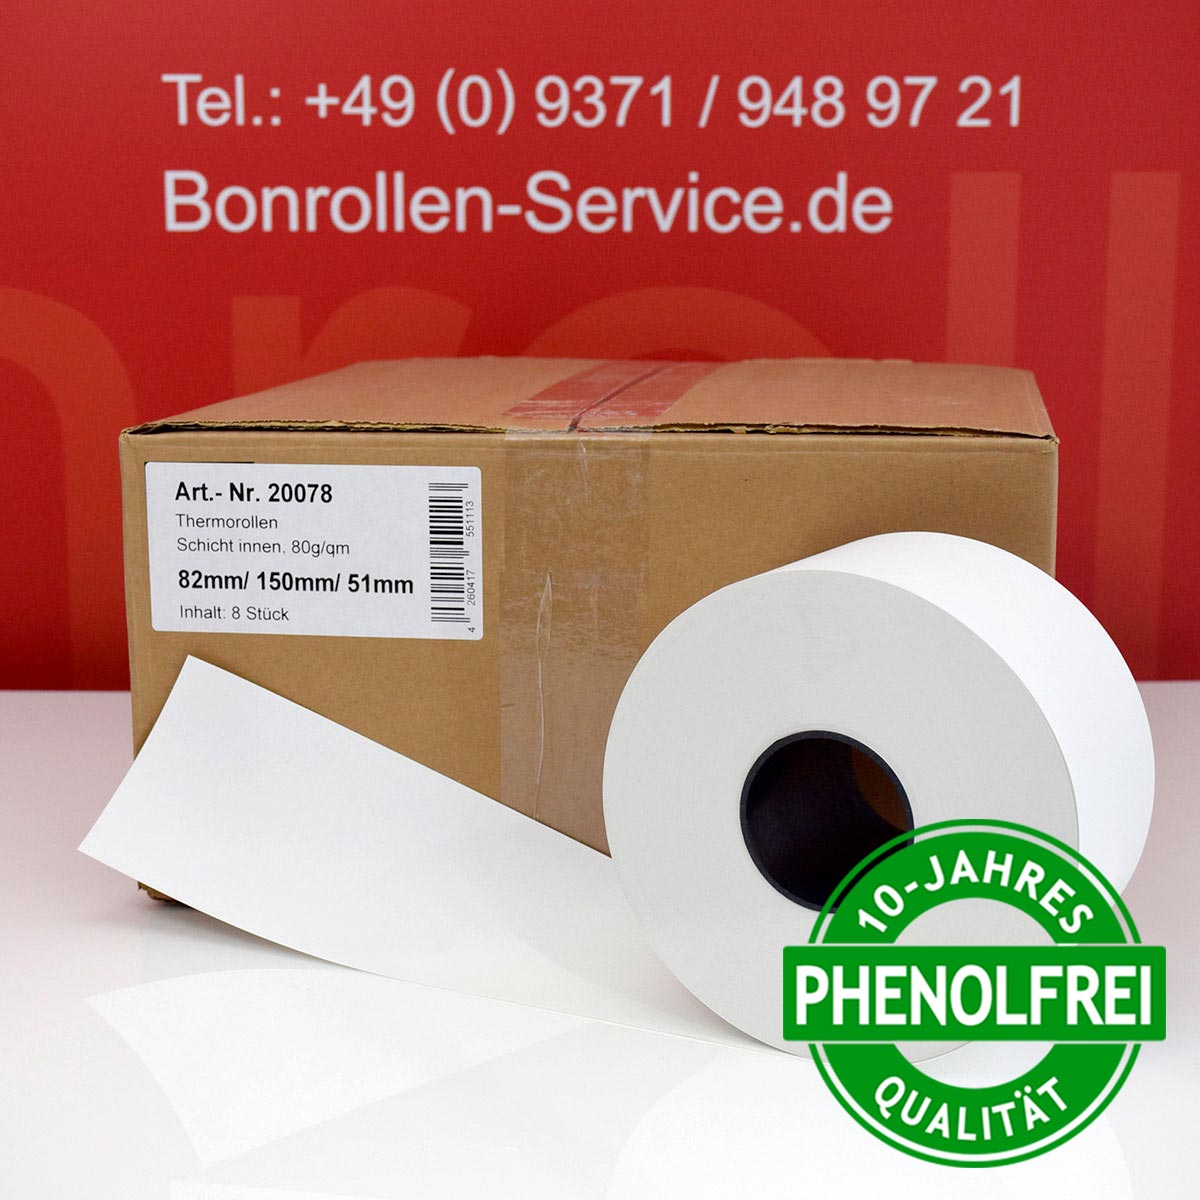 Phenolfreie Automatenrollen 82 / 150 / 51 weiß mit extra-starkem Thermopapier - Schicht innen